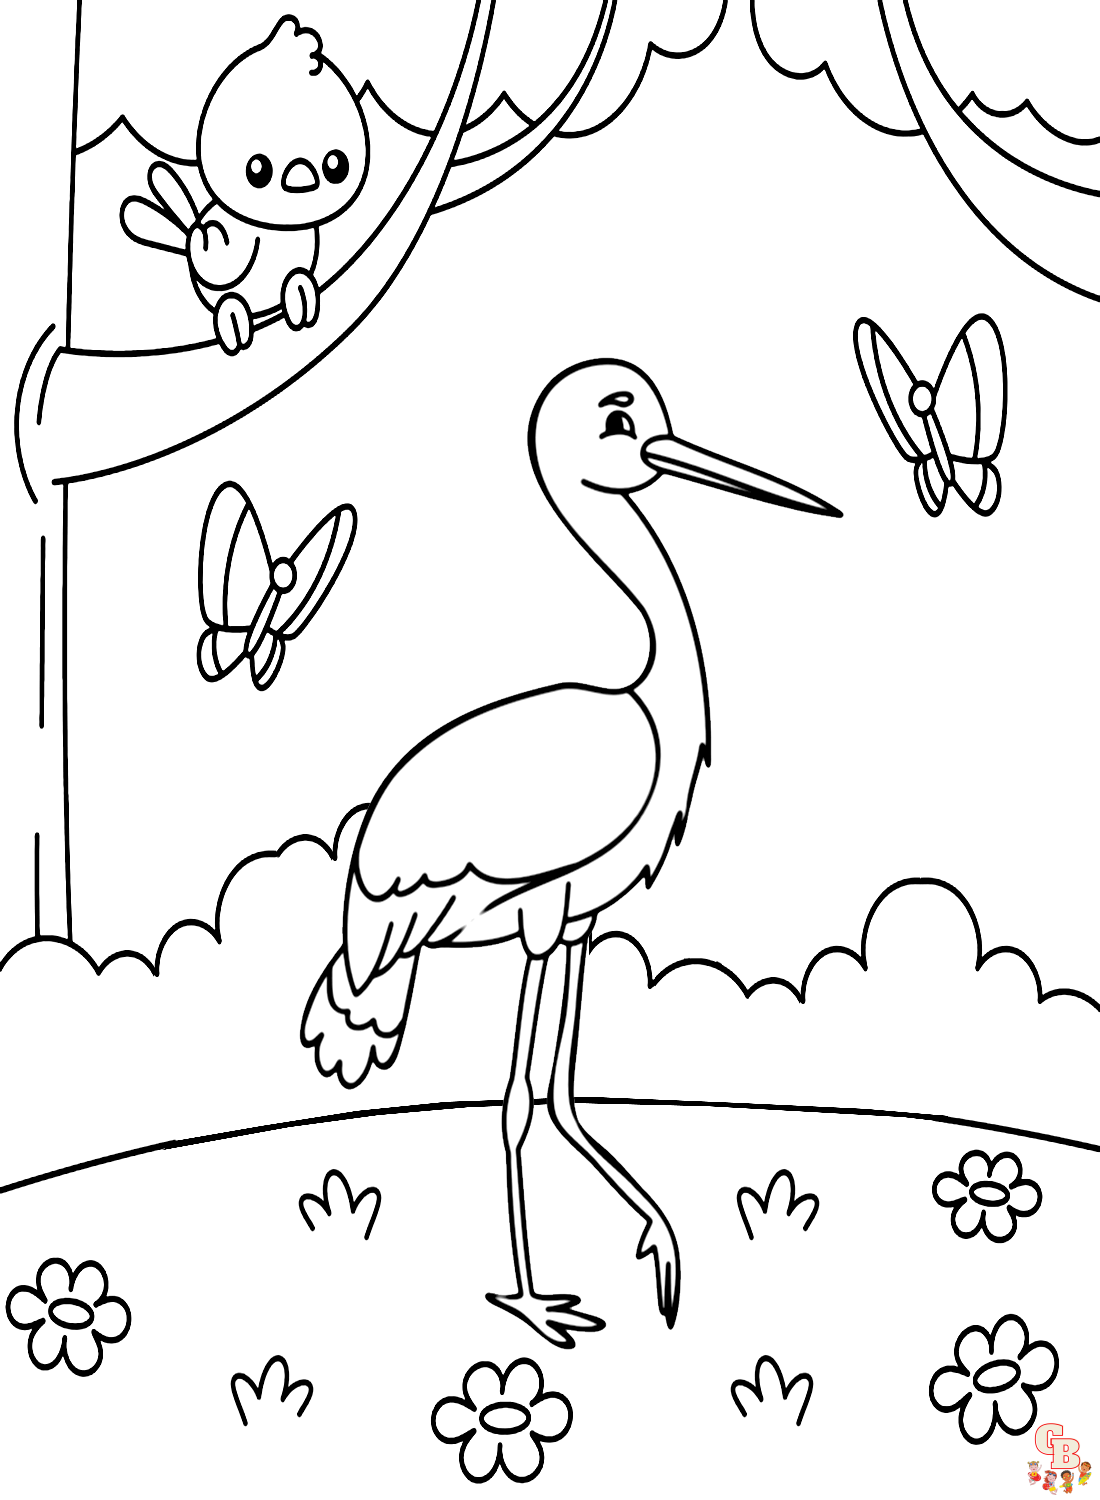 Vogel kleurplaat - Leuke kleurplaten om te printen voor kinderen en tieners